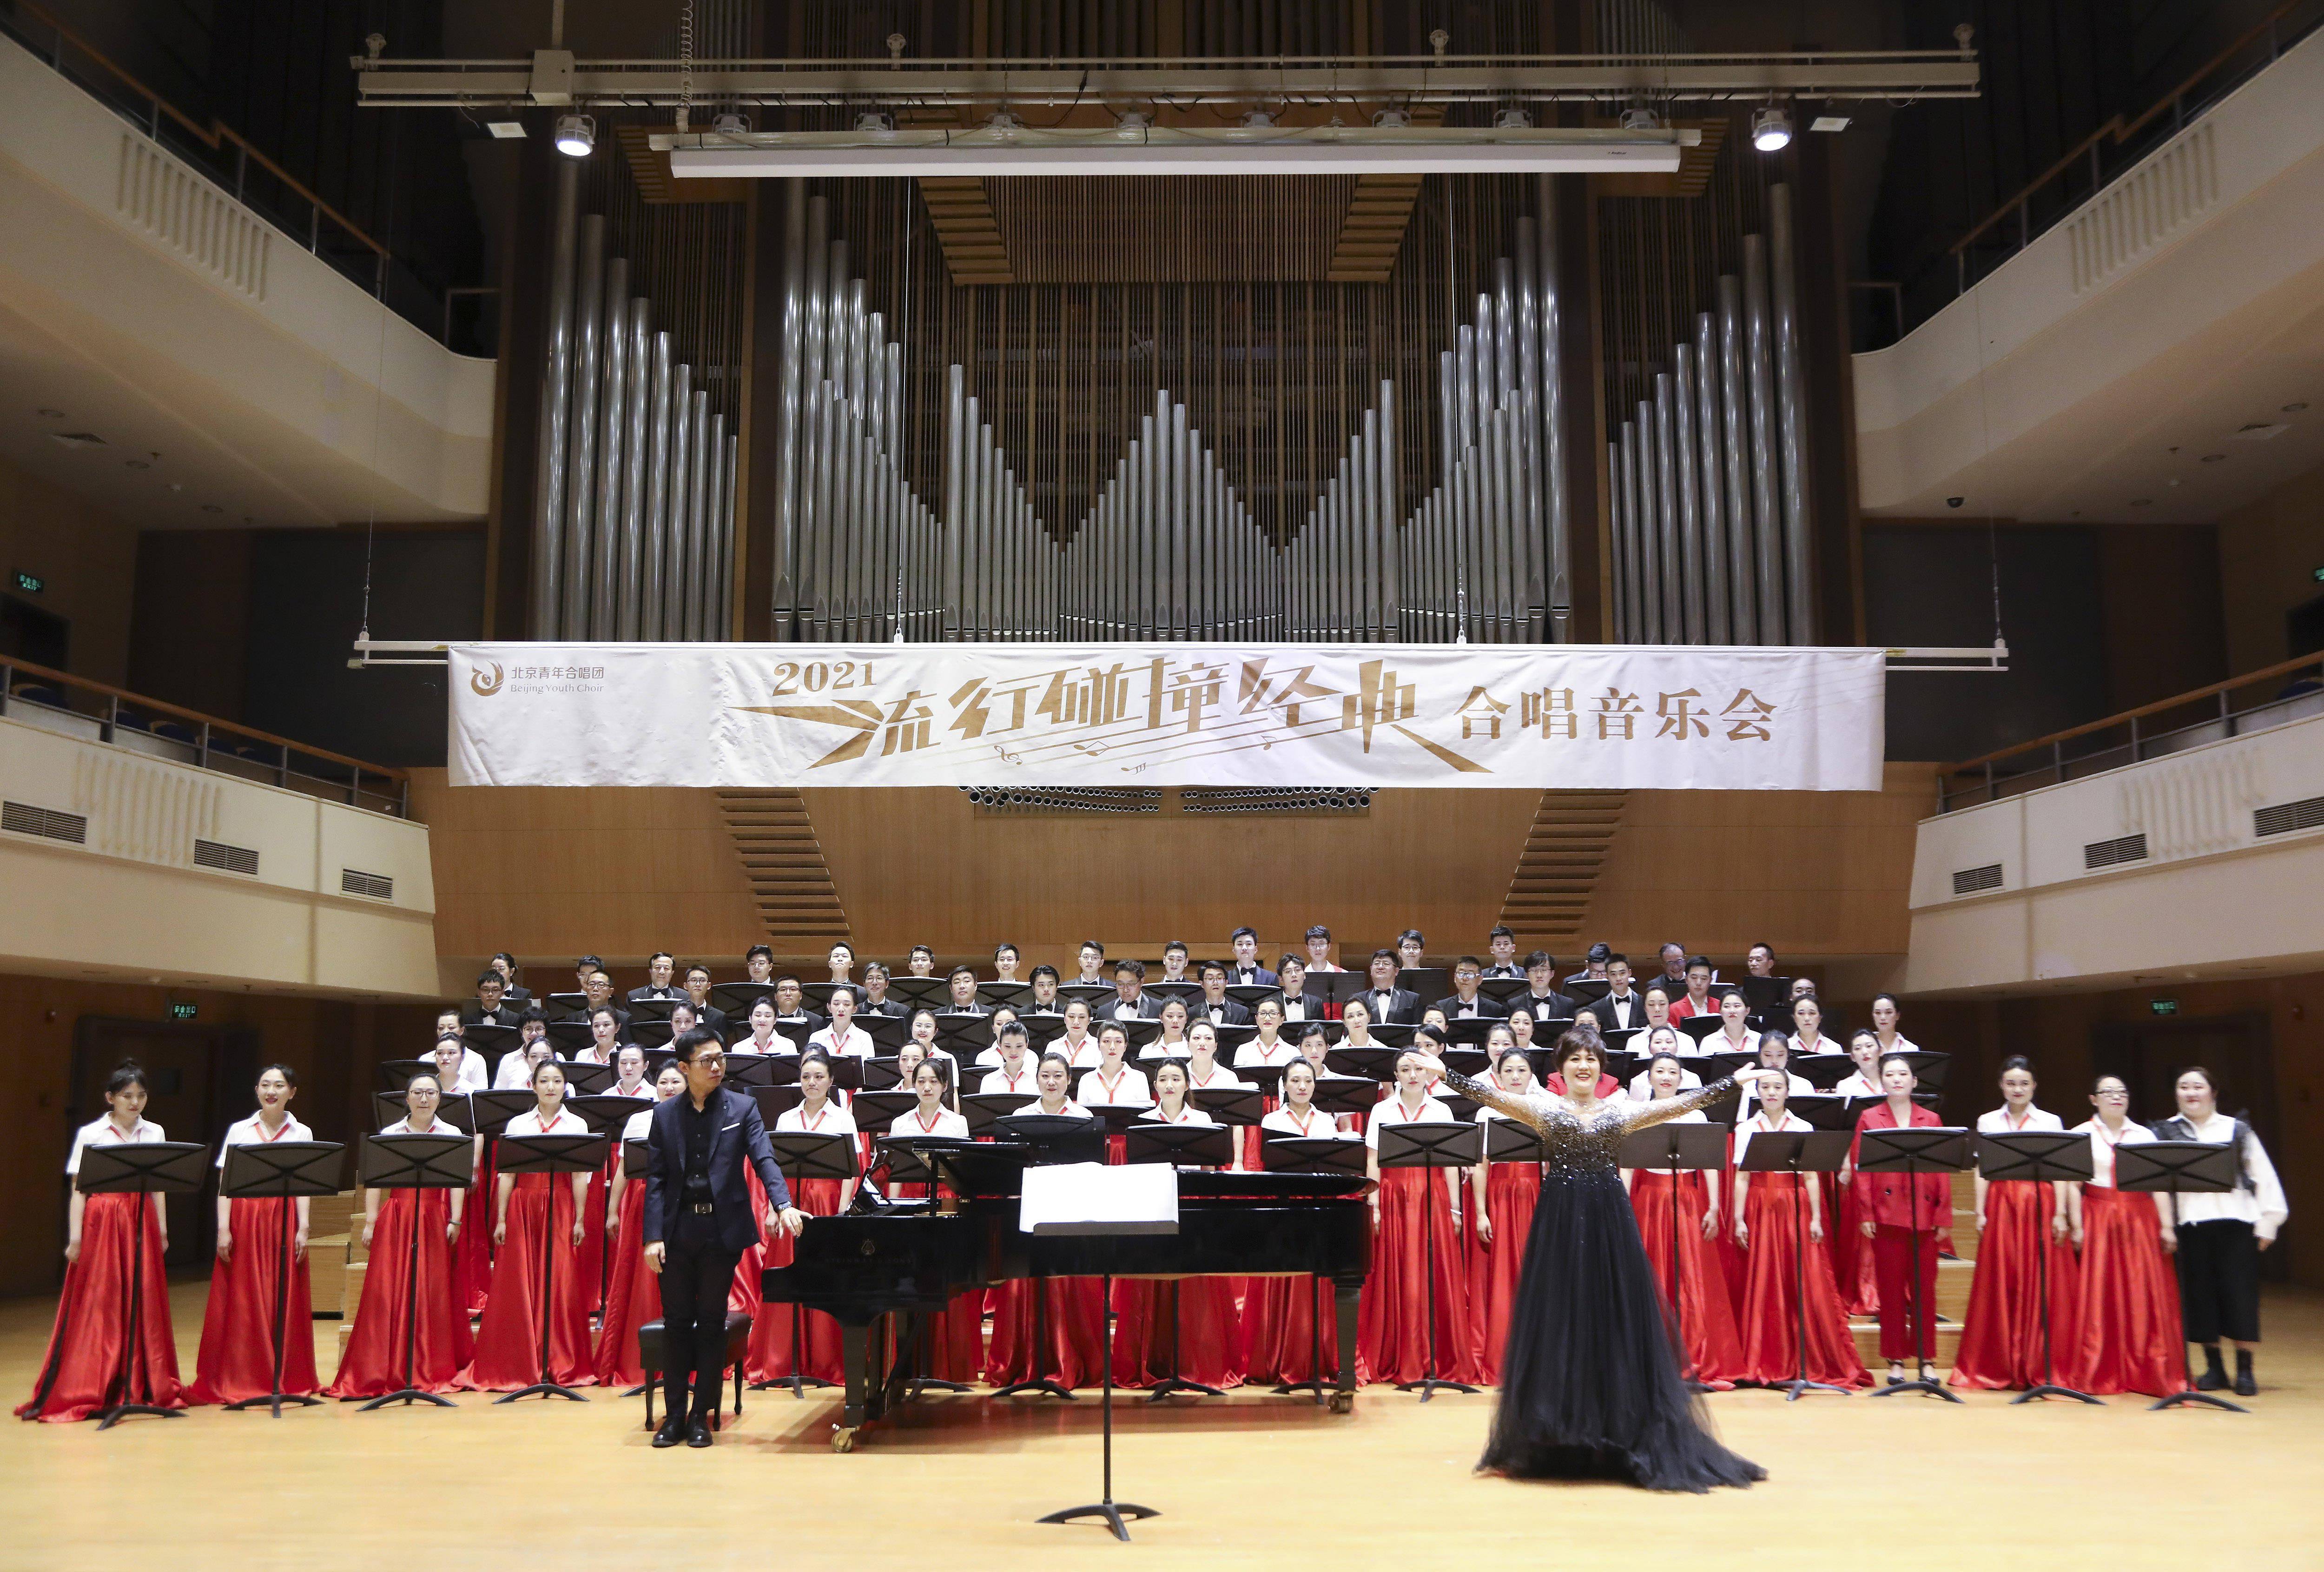 北京青年合唱团:流行碰撞经典献礼建党百年